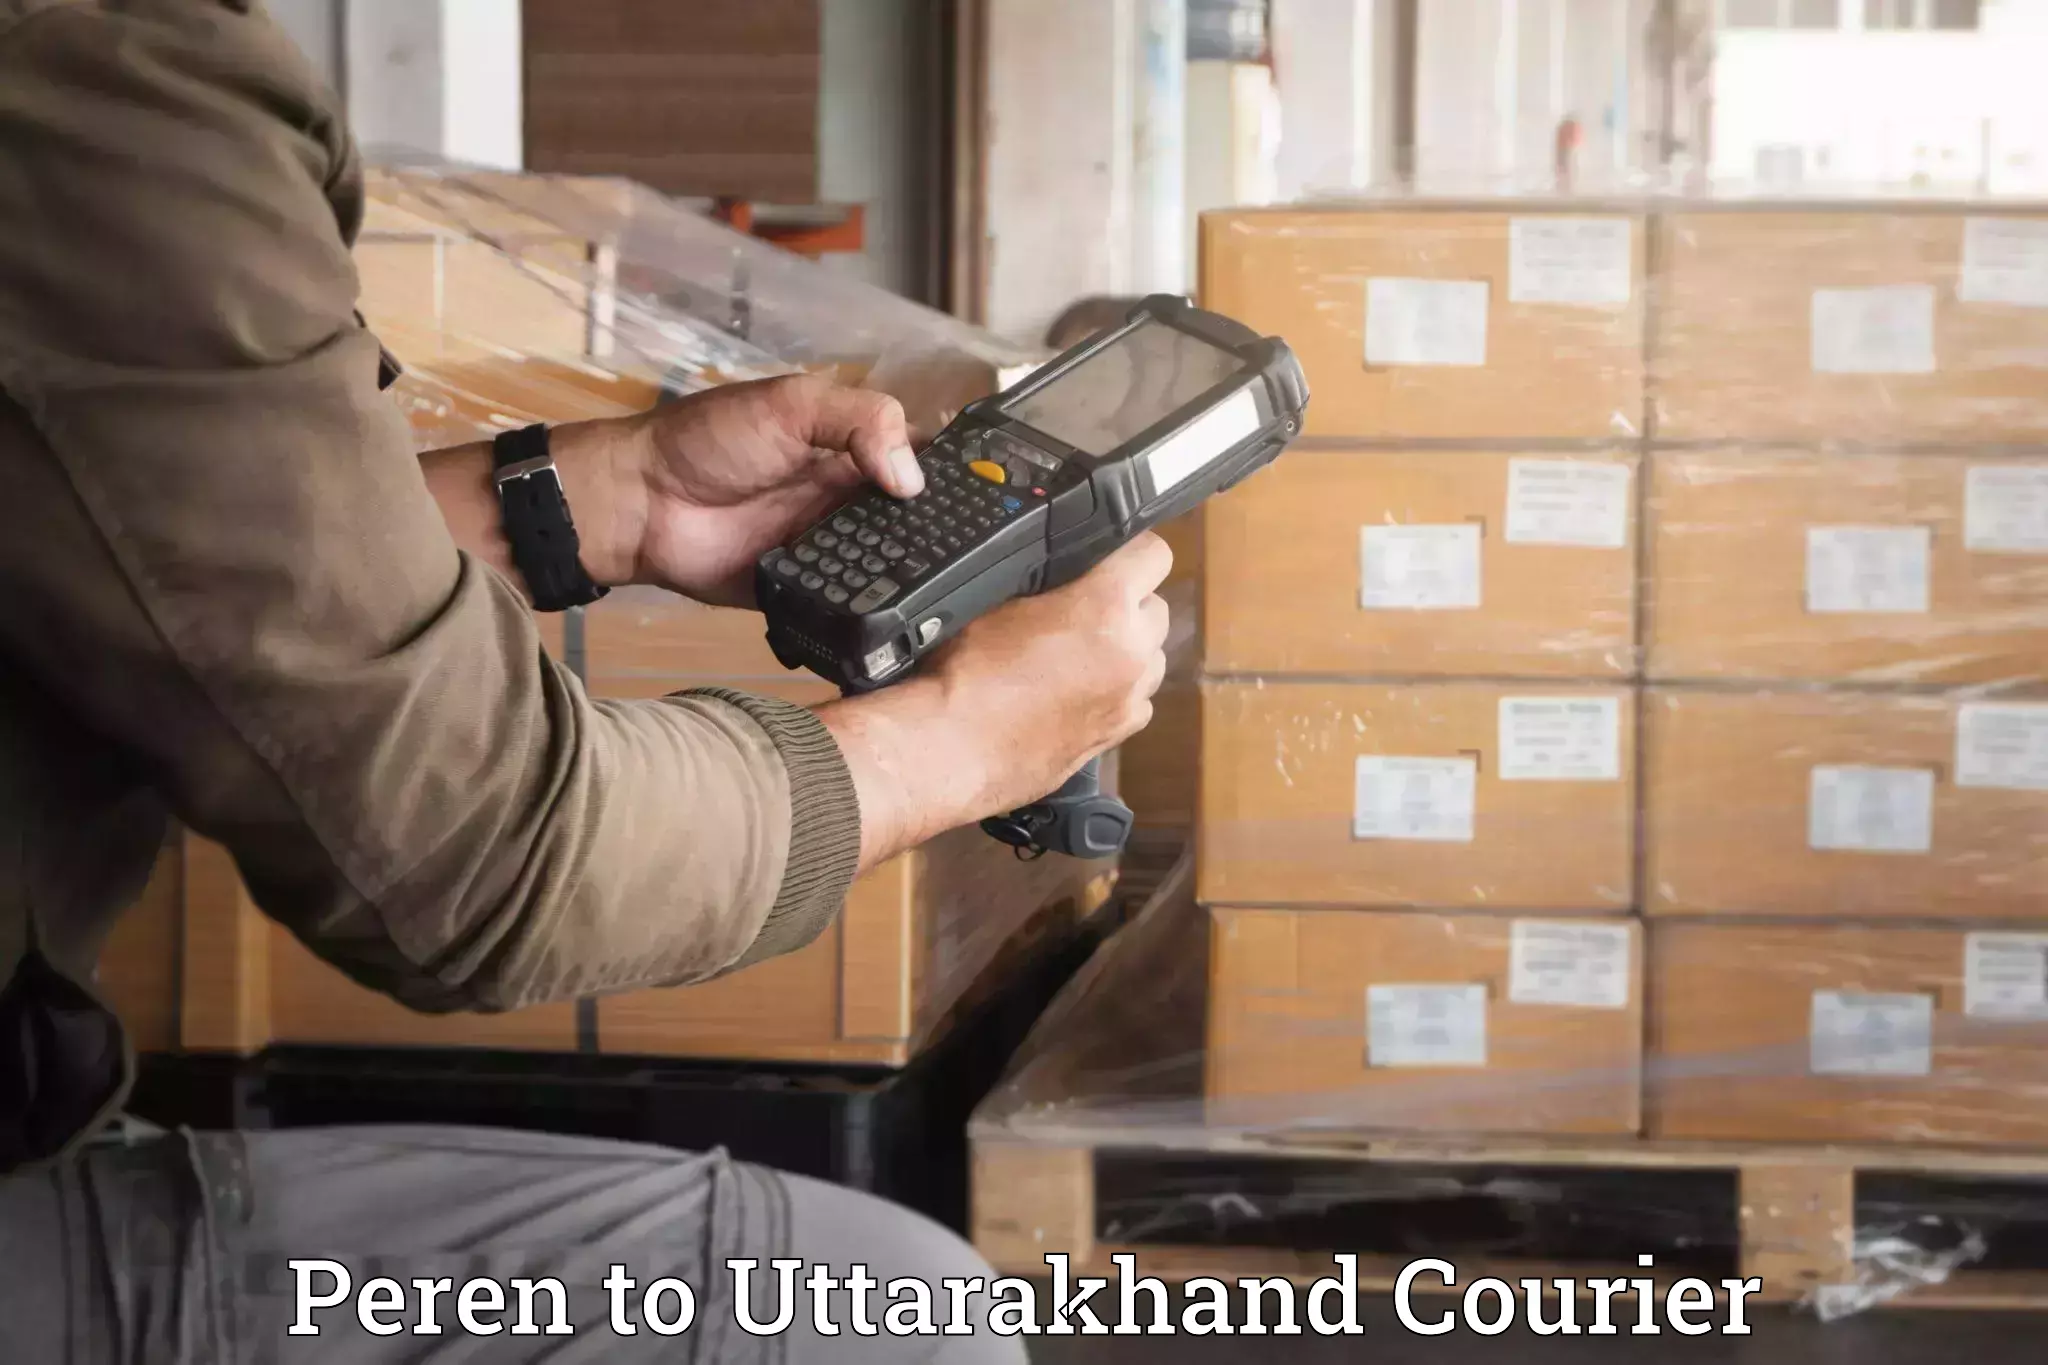 Household moving experts Peren to Uttarakhand